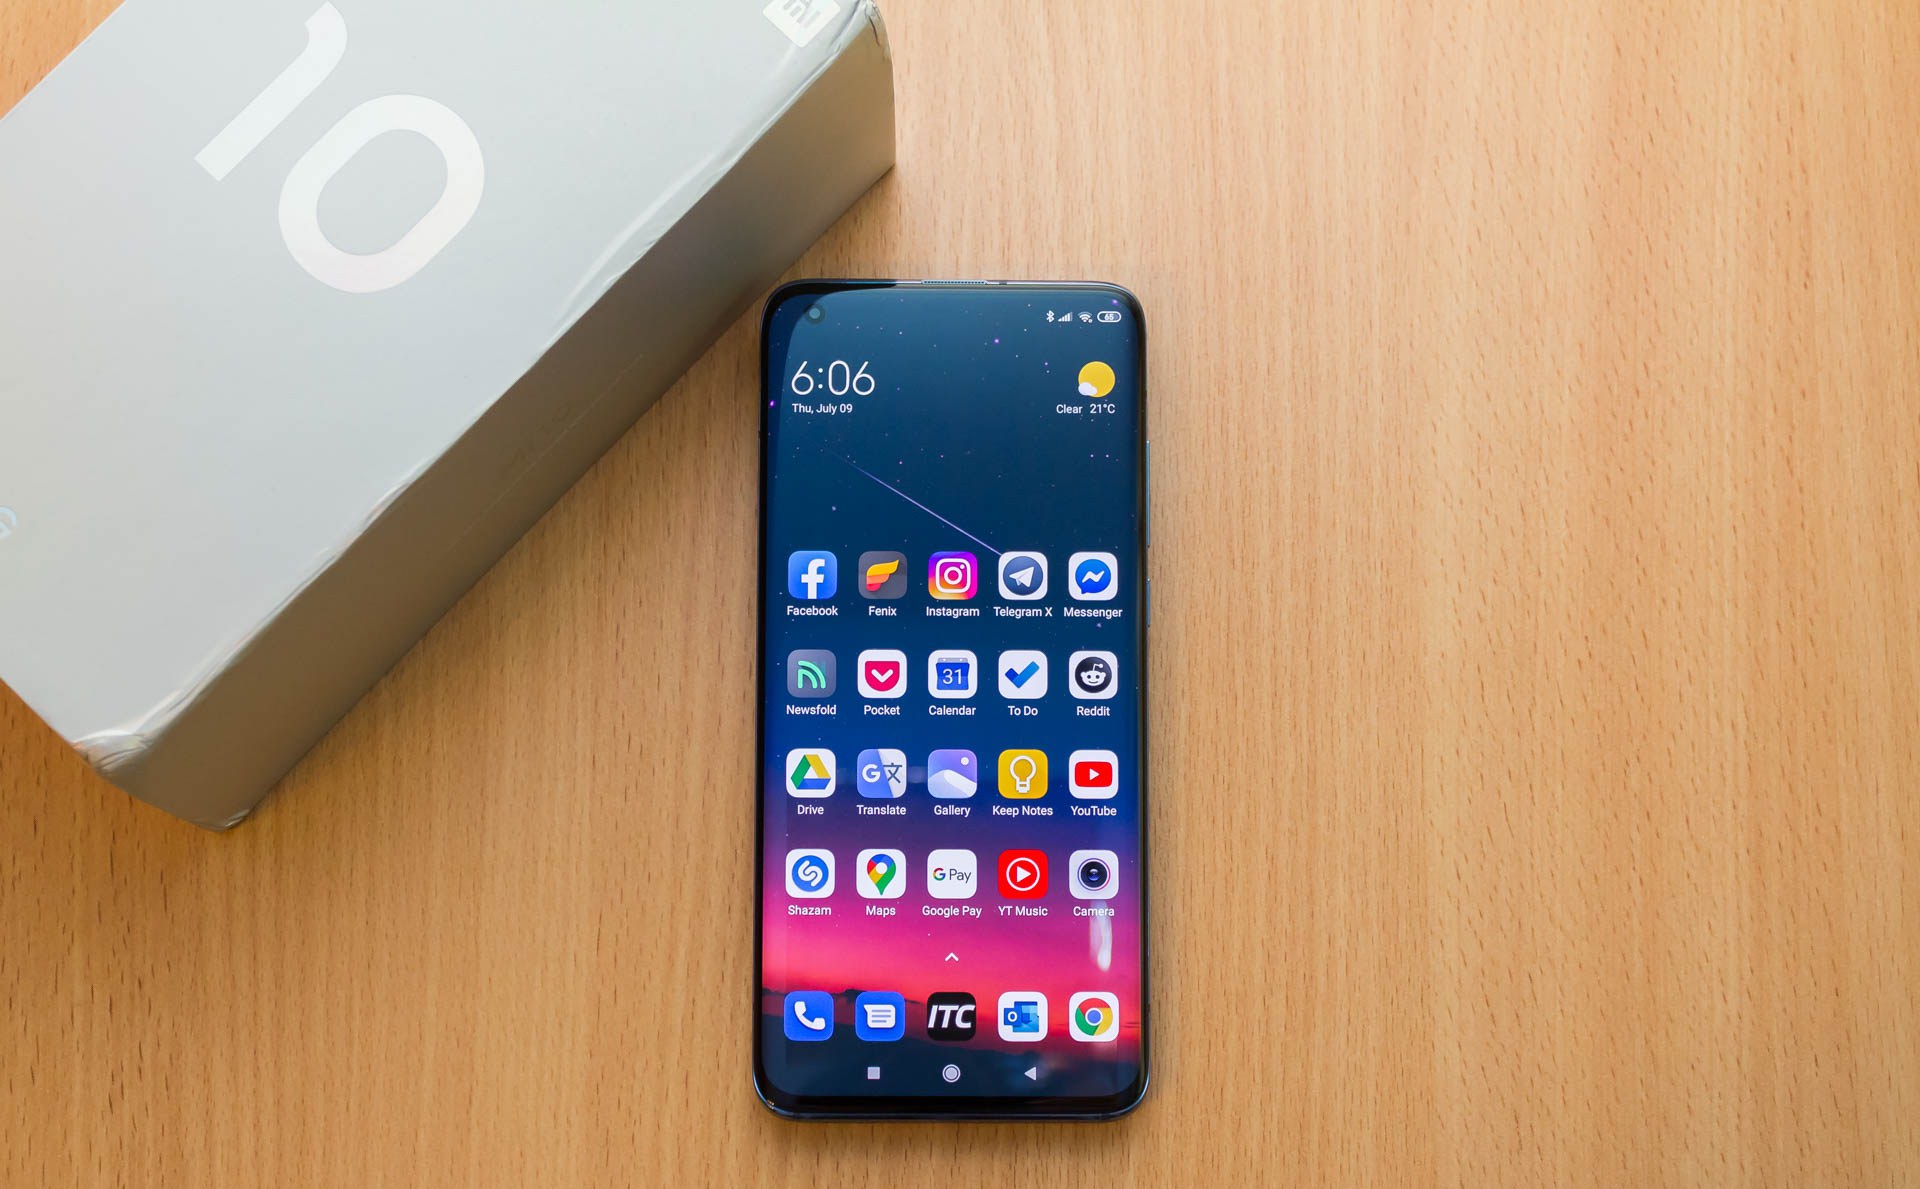 8 лучших смартфонов Xiaomi на сентябрь 2020 - какой взять?